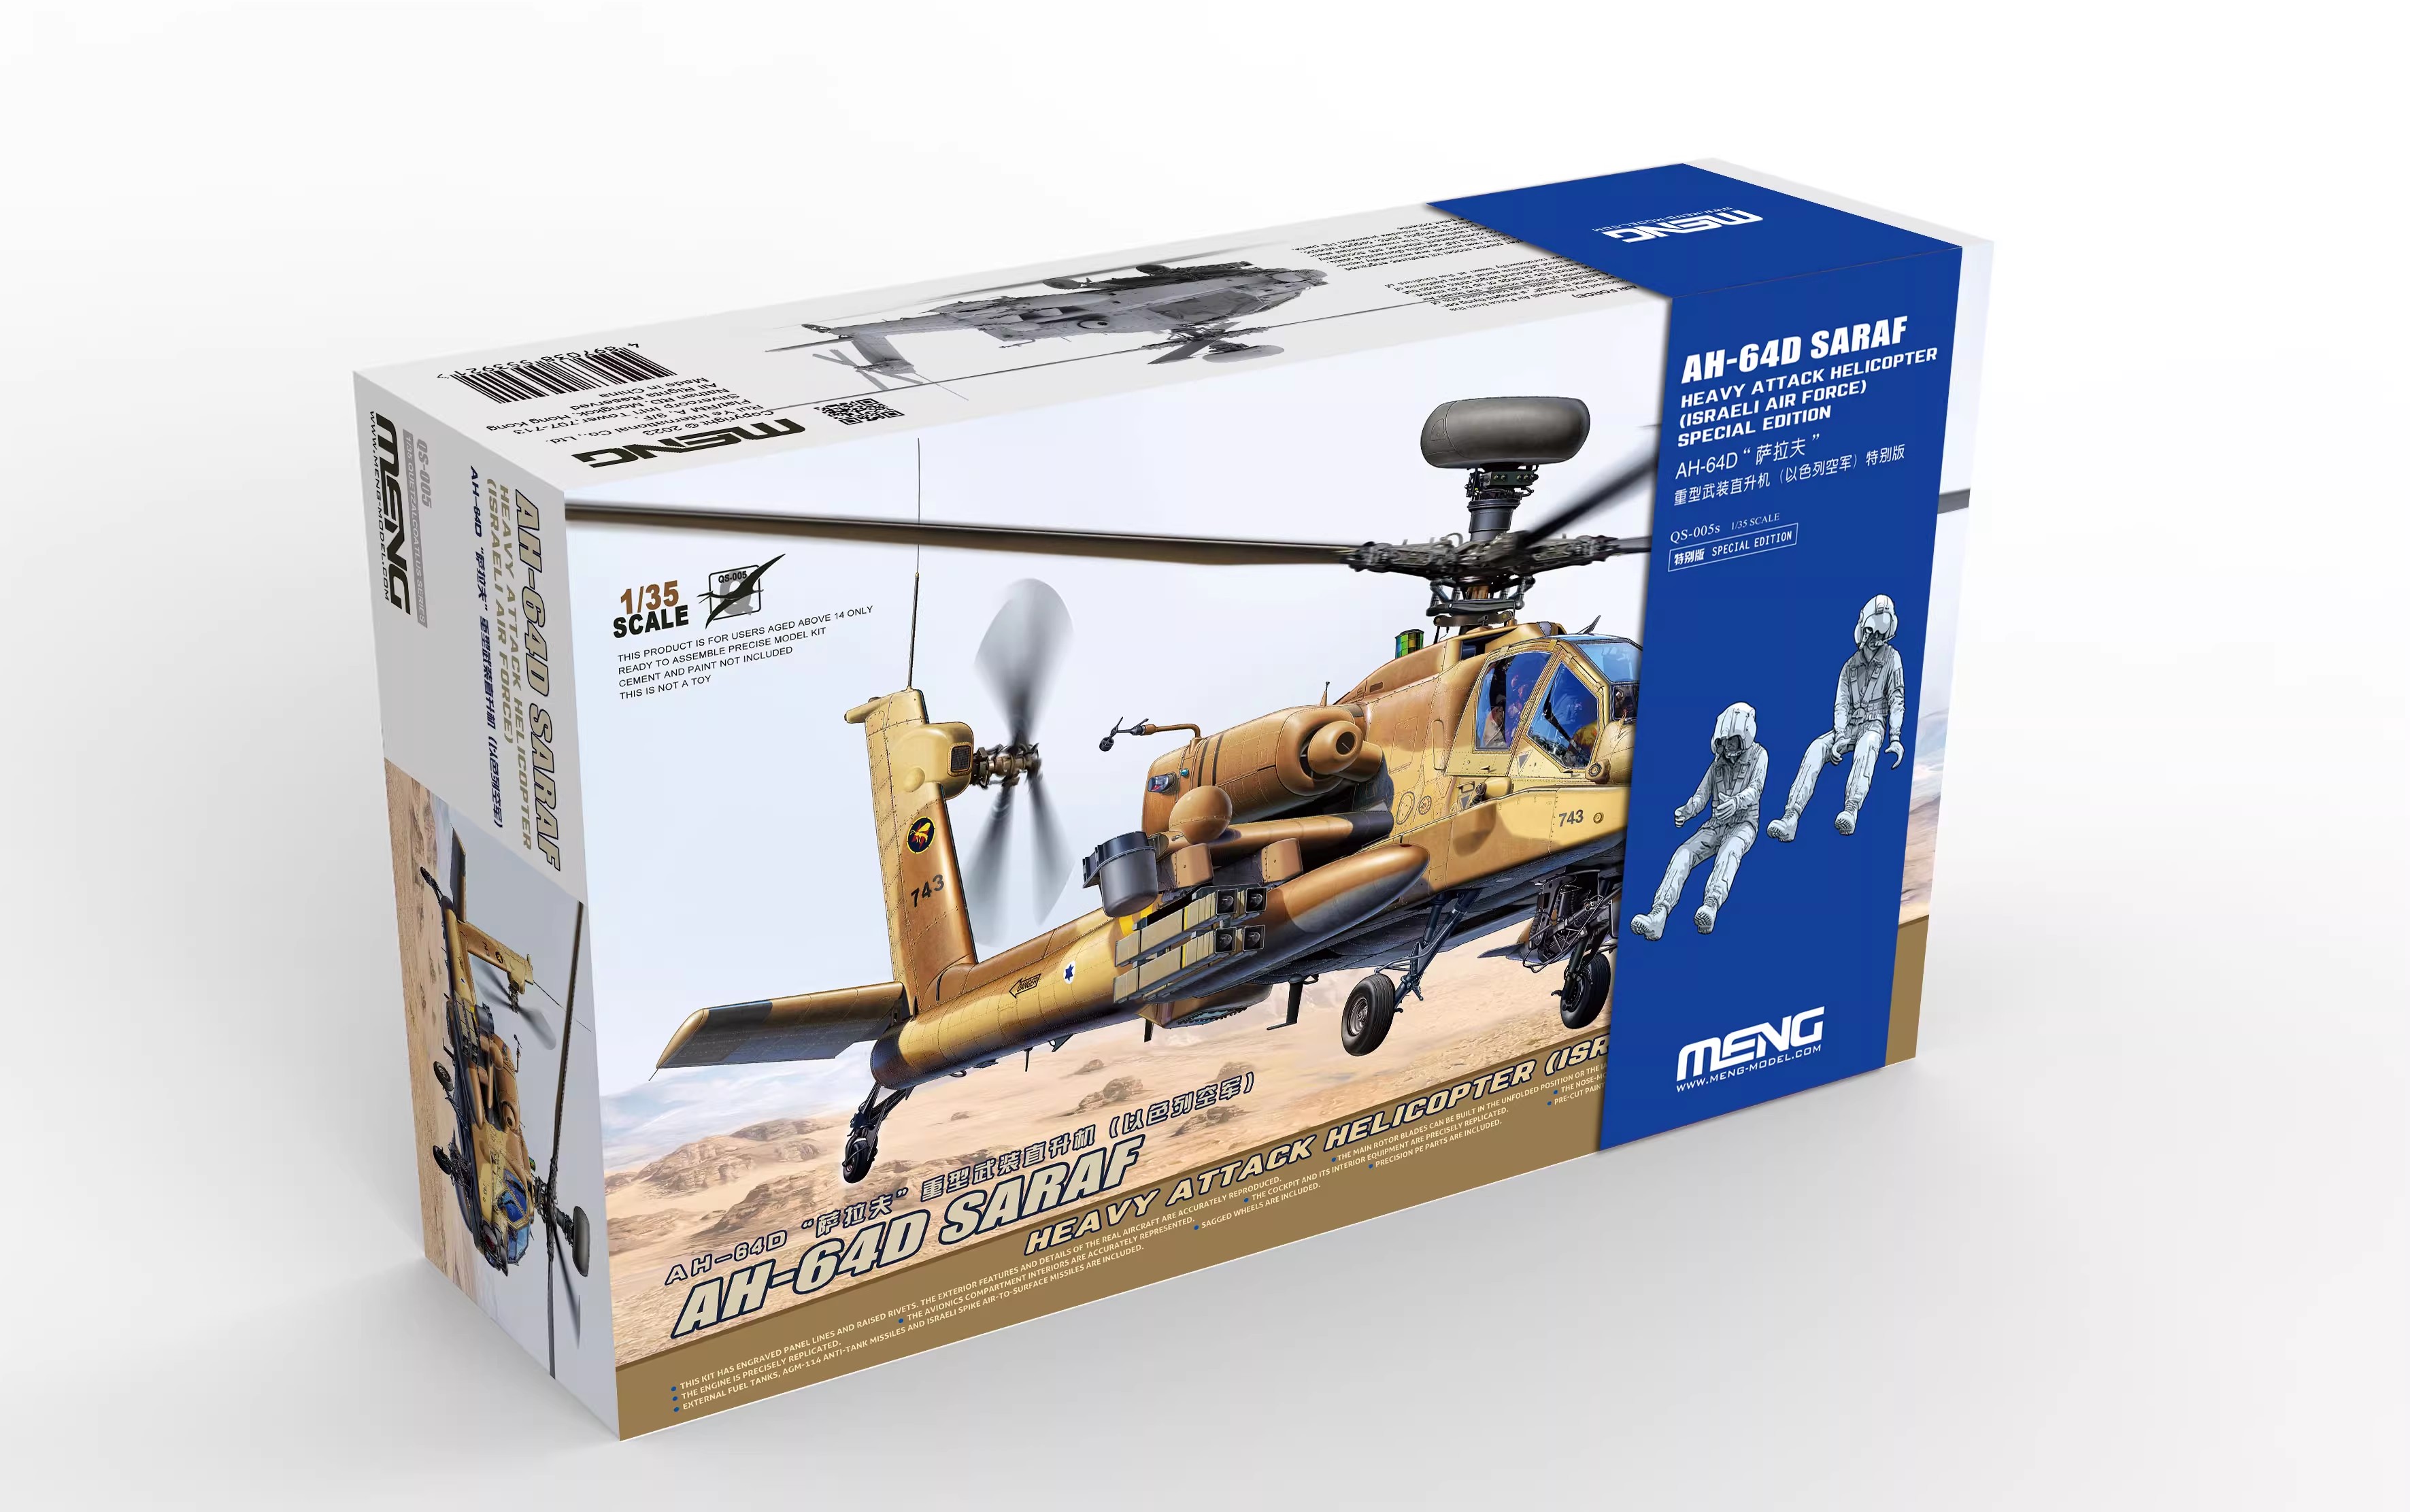 1/35 现代以色列 AH-64D 萨拉夫重型攻击直升机特别版(附驾驶员) - 点击图像关闭